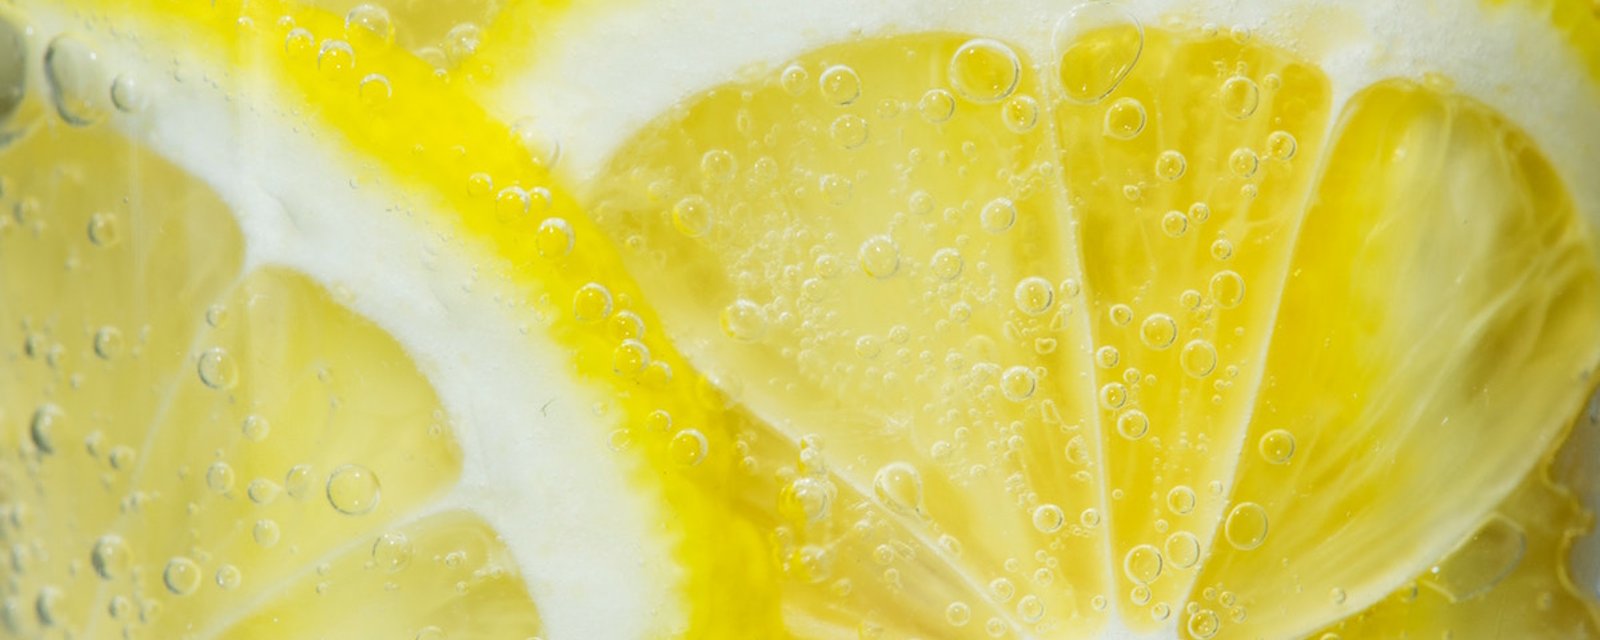 7 raisons qui font du citron un excellent allié pour votre santé